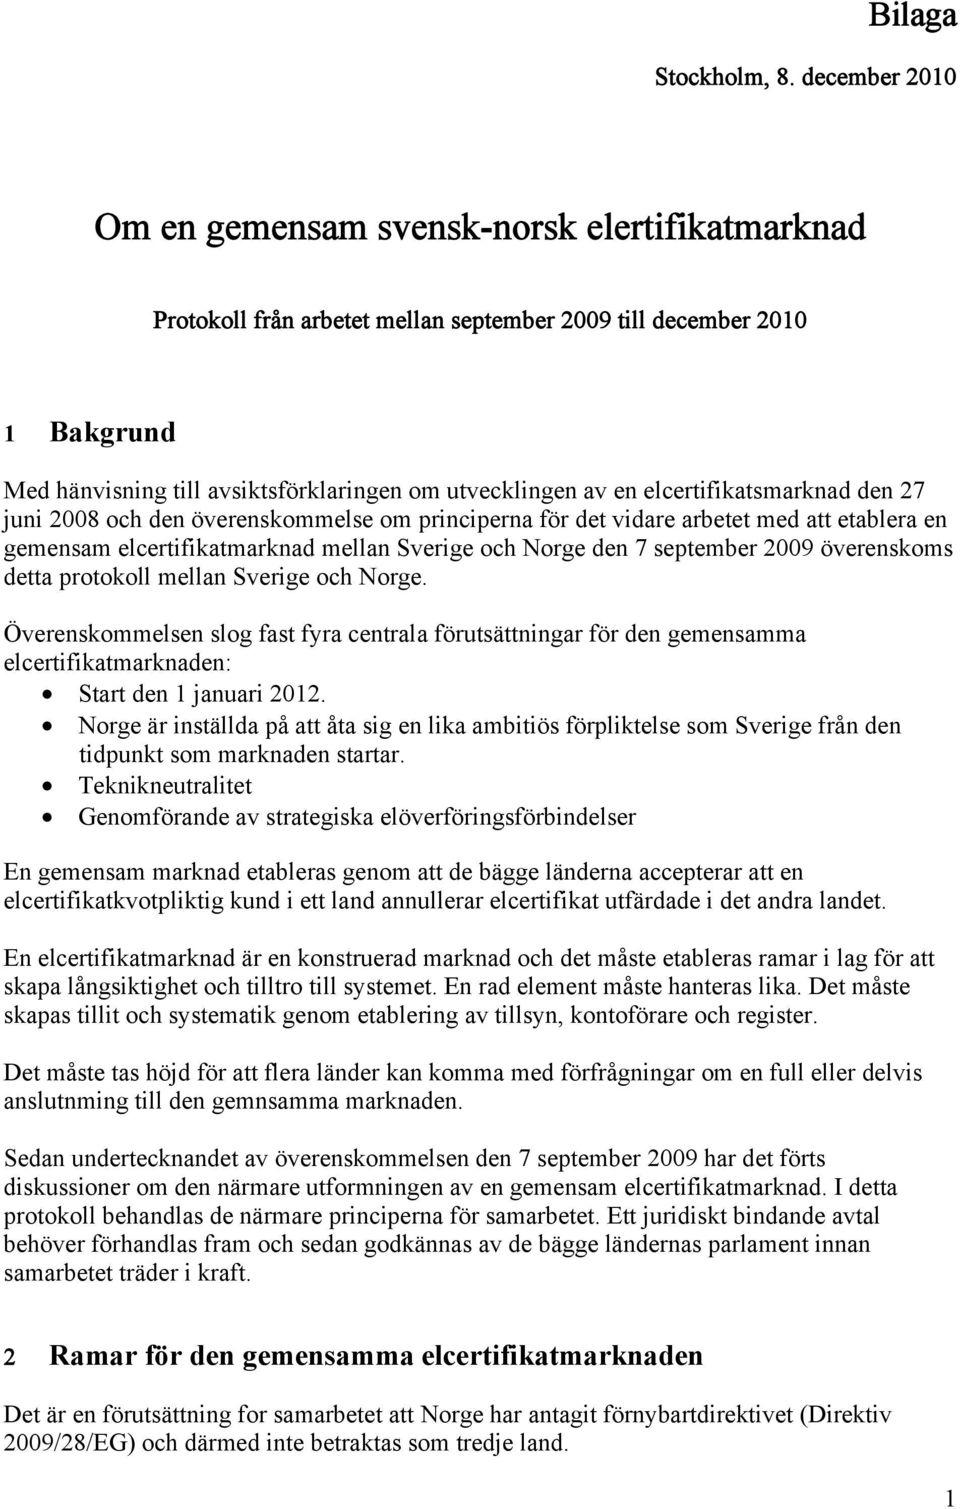 elcertifikatsmarknad den 27 juni 2008 och den överenskommelse om principerna för det vidare arbetet med att etablera en gemensam elcertifikatmarknad mellan Sverige och Norge den 7 september 2009